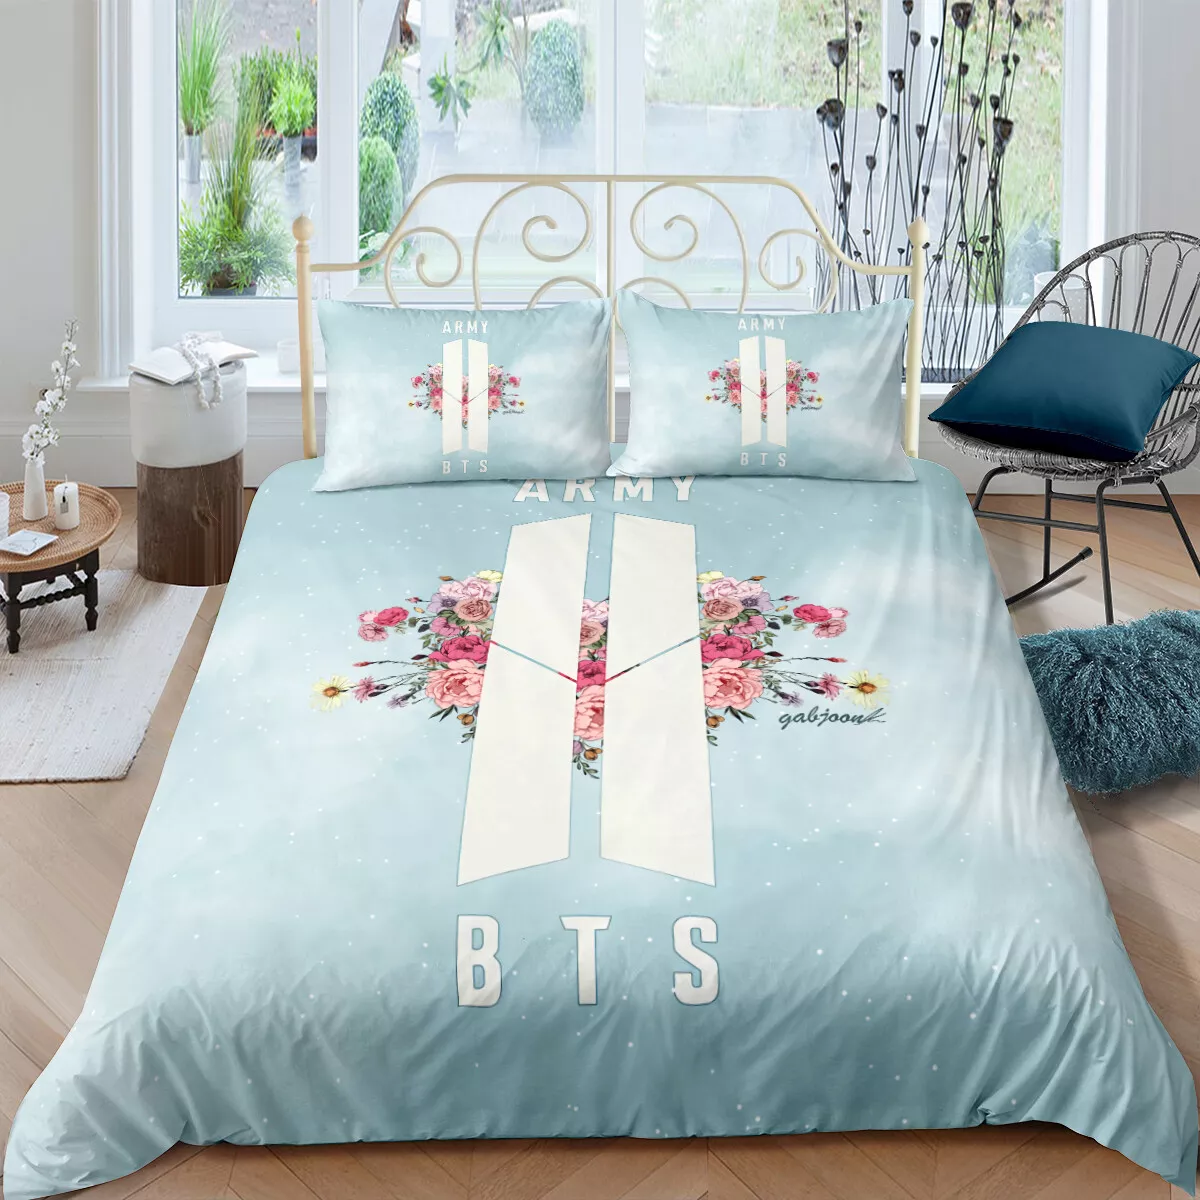 3D Love BTS Bedding Set Duvet Cover Comforter Cover Pillow Case | eBay